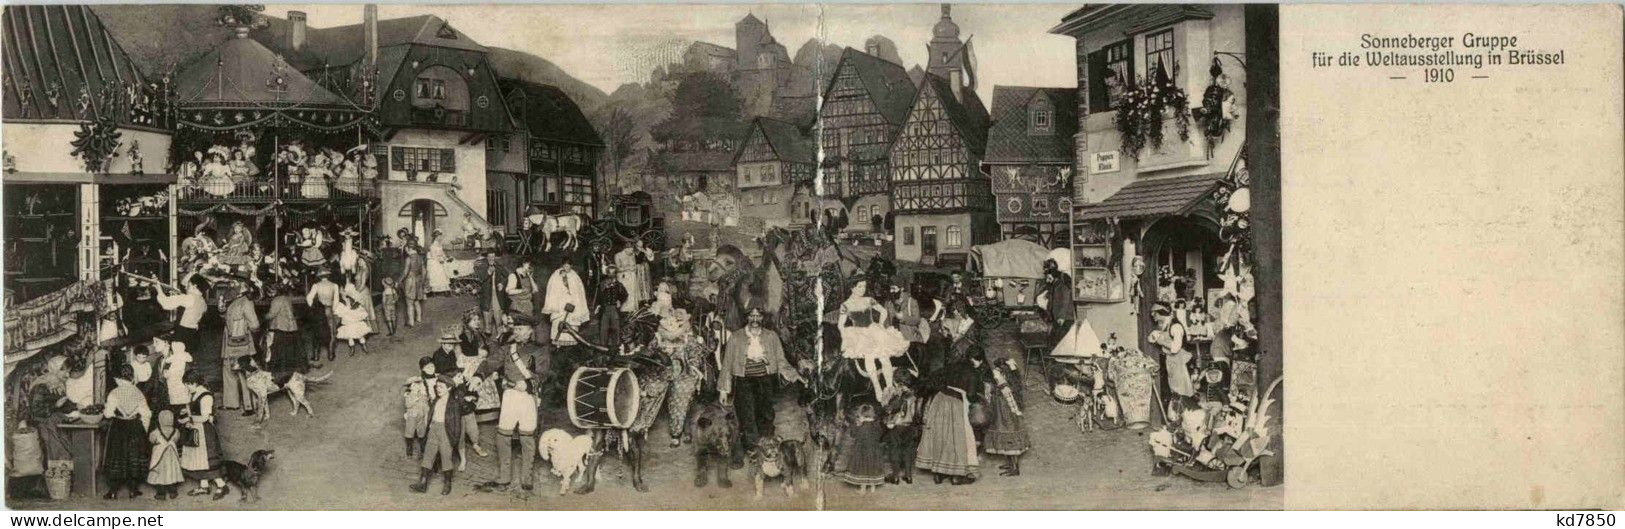 Bruxelles - Sonneberger Gruppe Für Die Weltausstellung 1910 - Klappkarte - Expositions Universelles